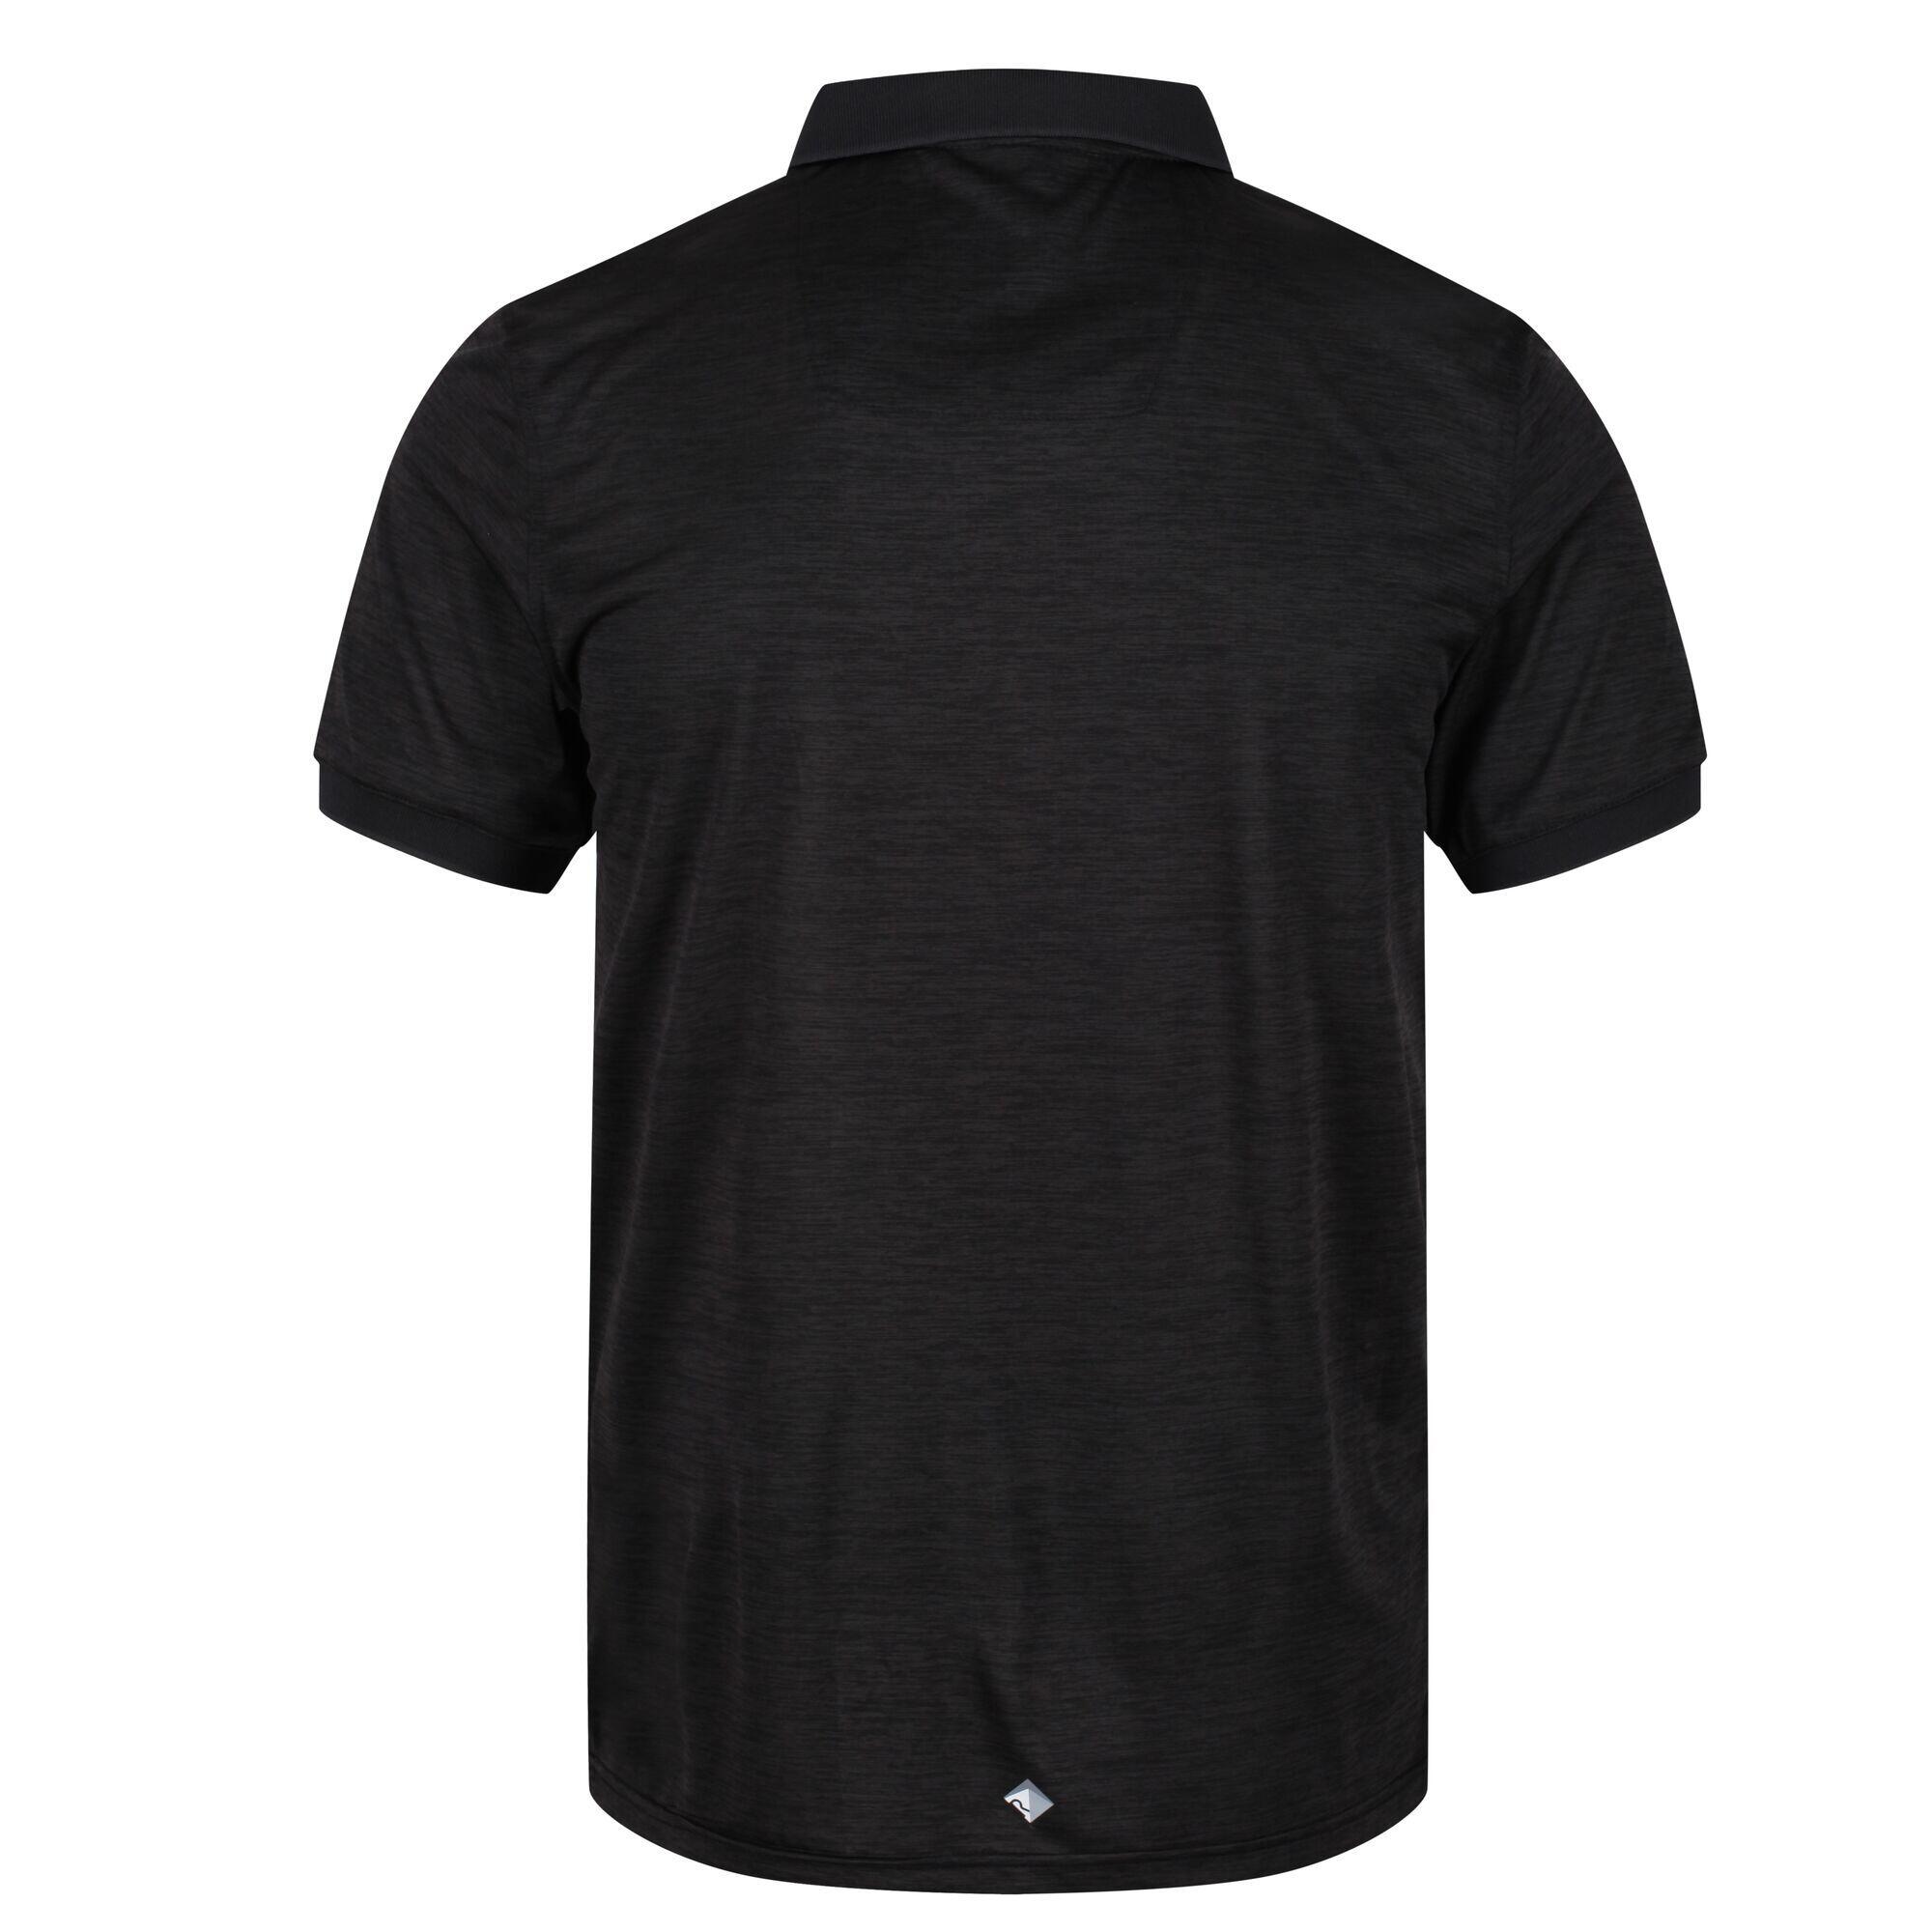 Remex II Men's Fitness T-Shirt - Black 6/7